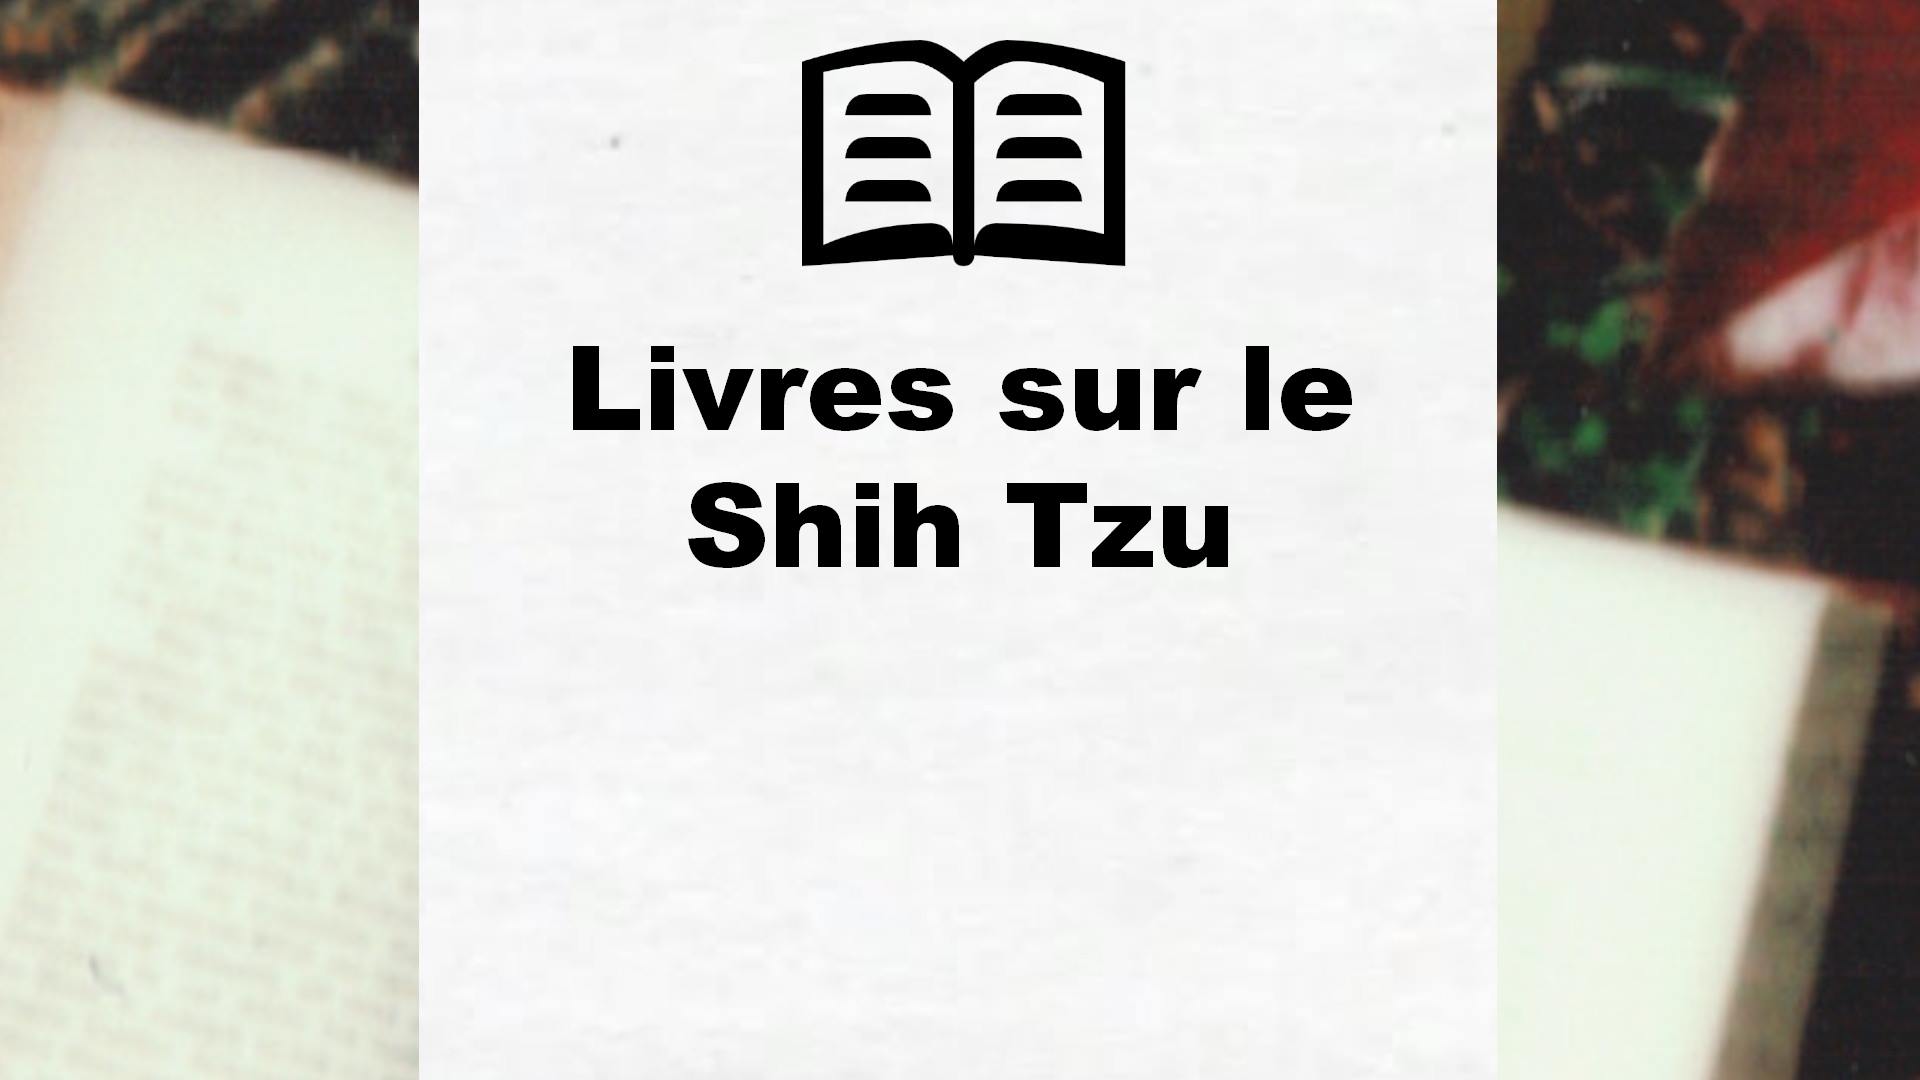 Livres sur le Shih Tzu